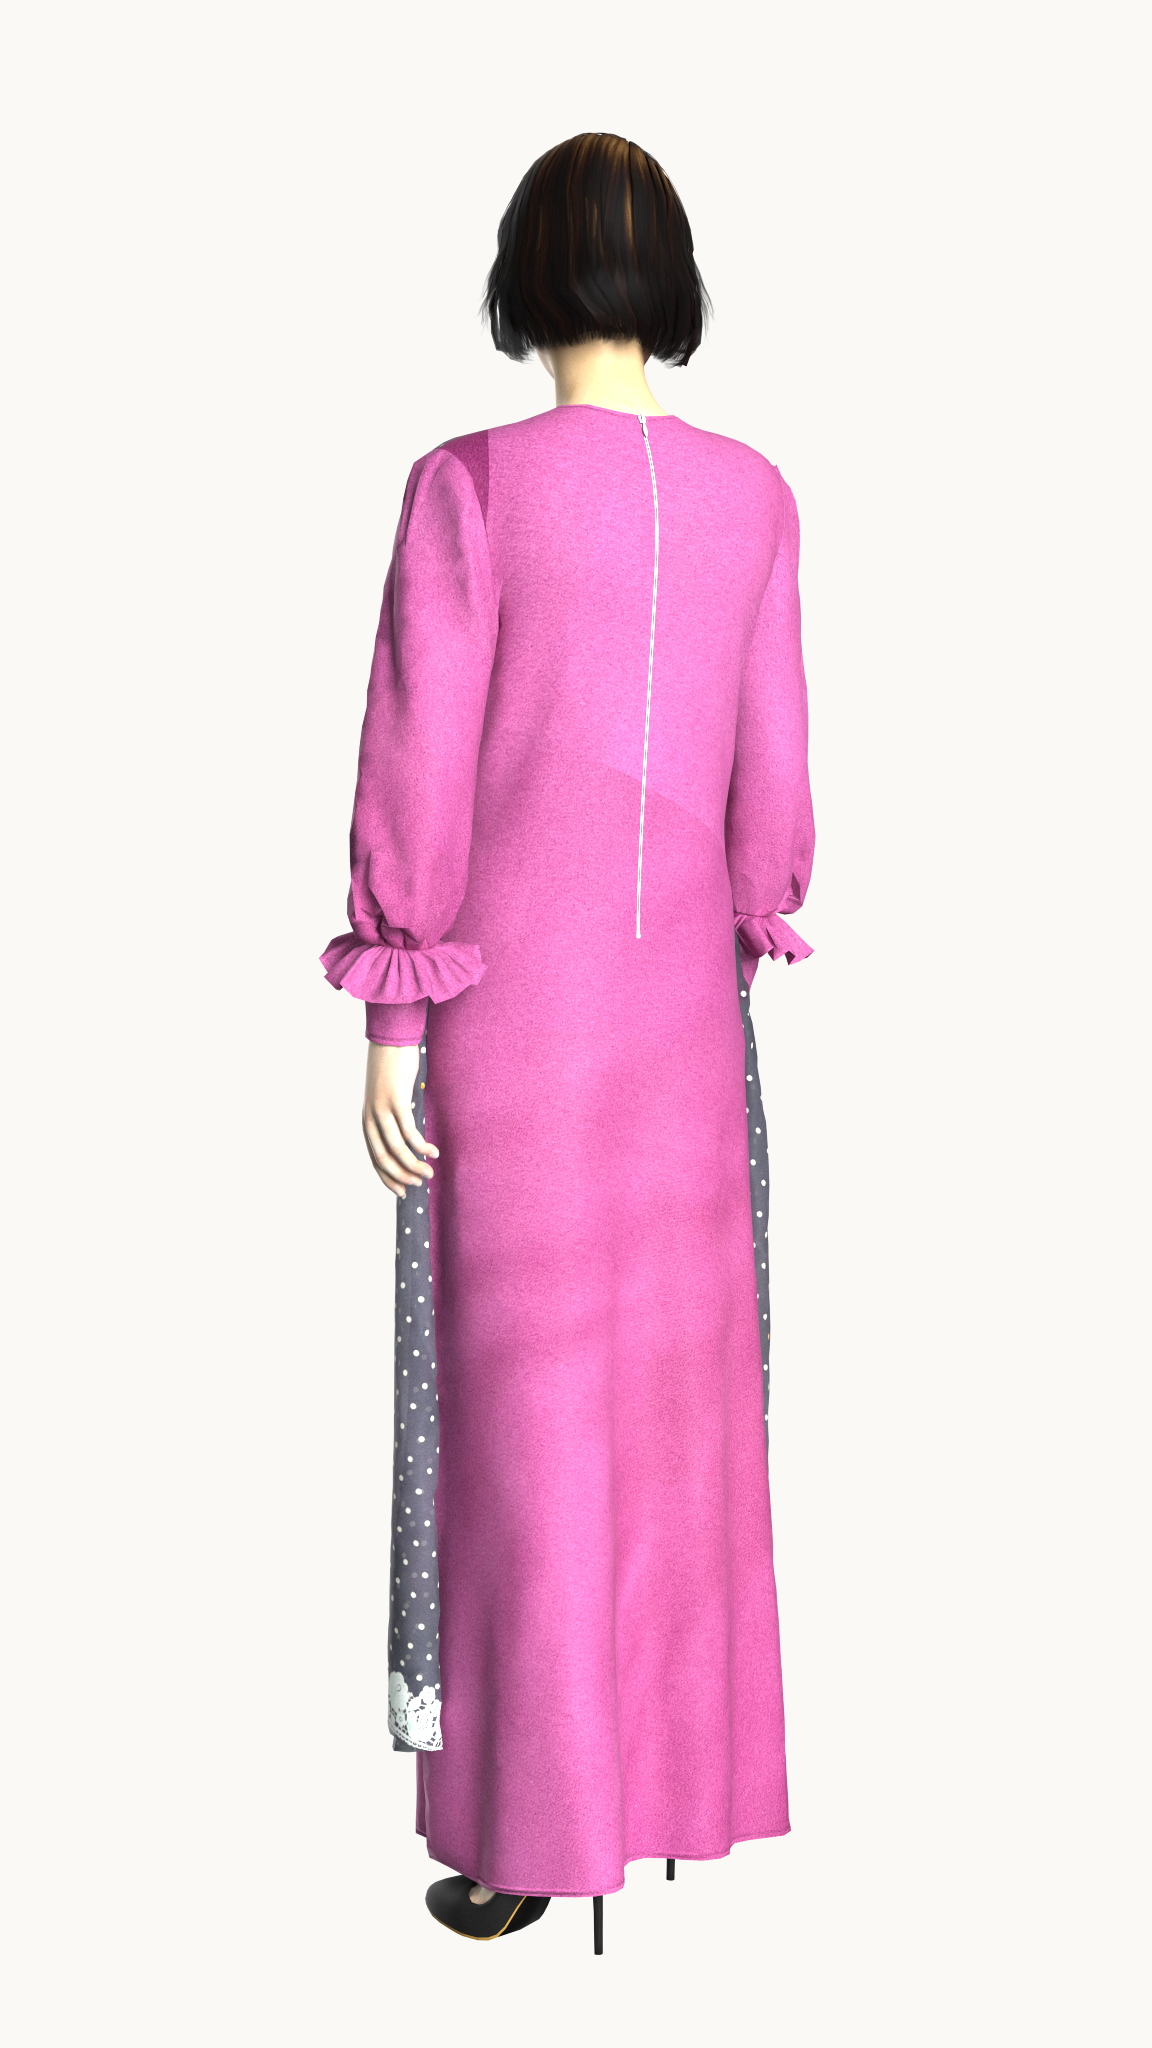 Coat style layered lace dress (Royal Fuchsia)